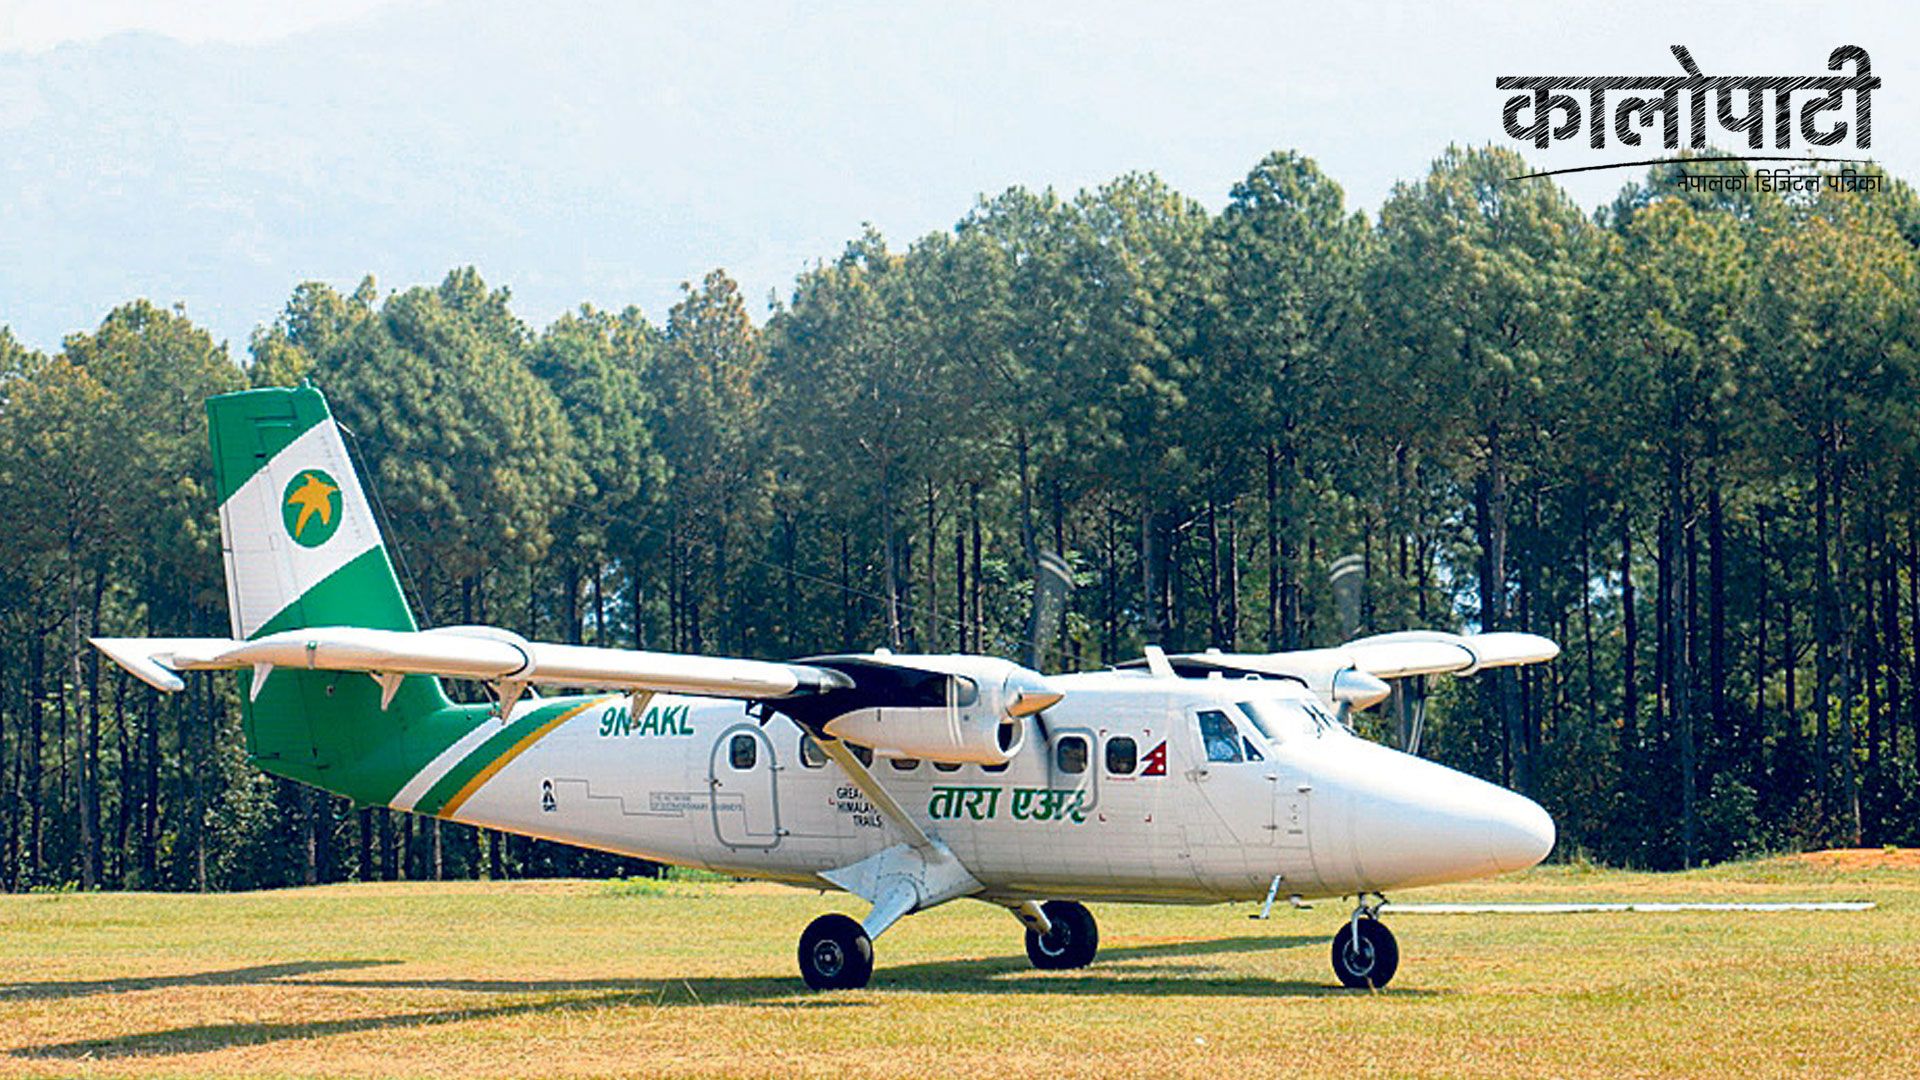 बलेवा विमानस्थल स्तरोन्नतिसँगै सञ्चालनमा ल्याइने, ग्रामीण क्षेत्रबाट गुणस्तरीय हवाई सेवा दिने उद्देश्य